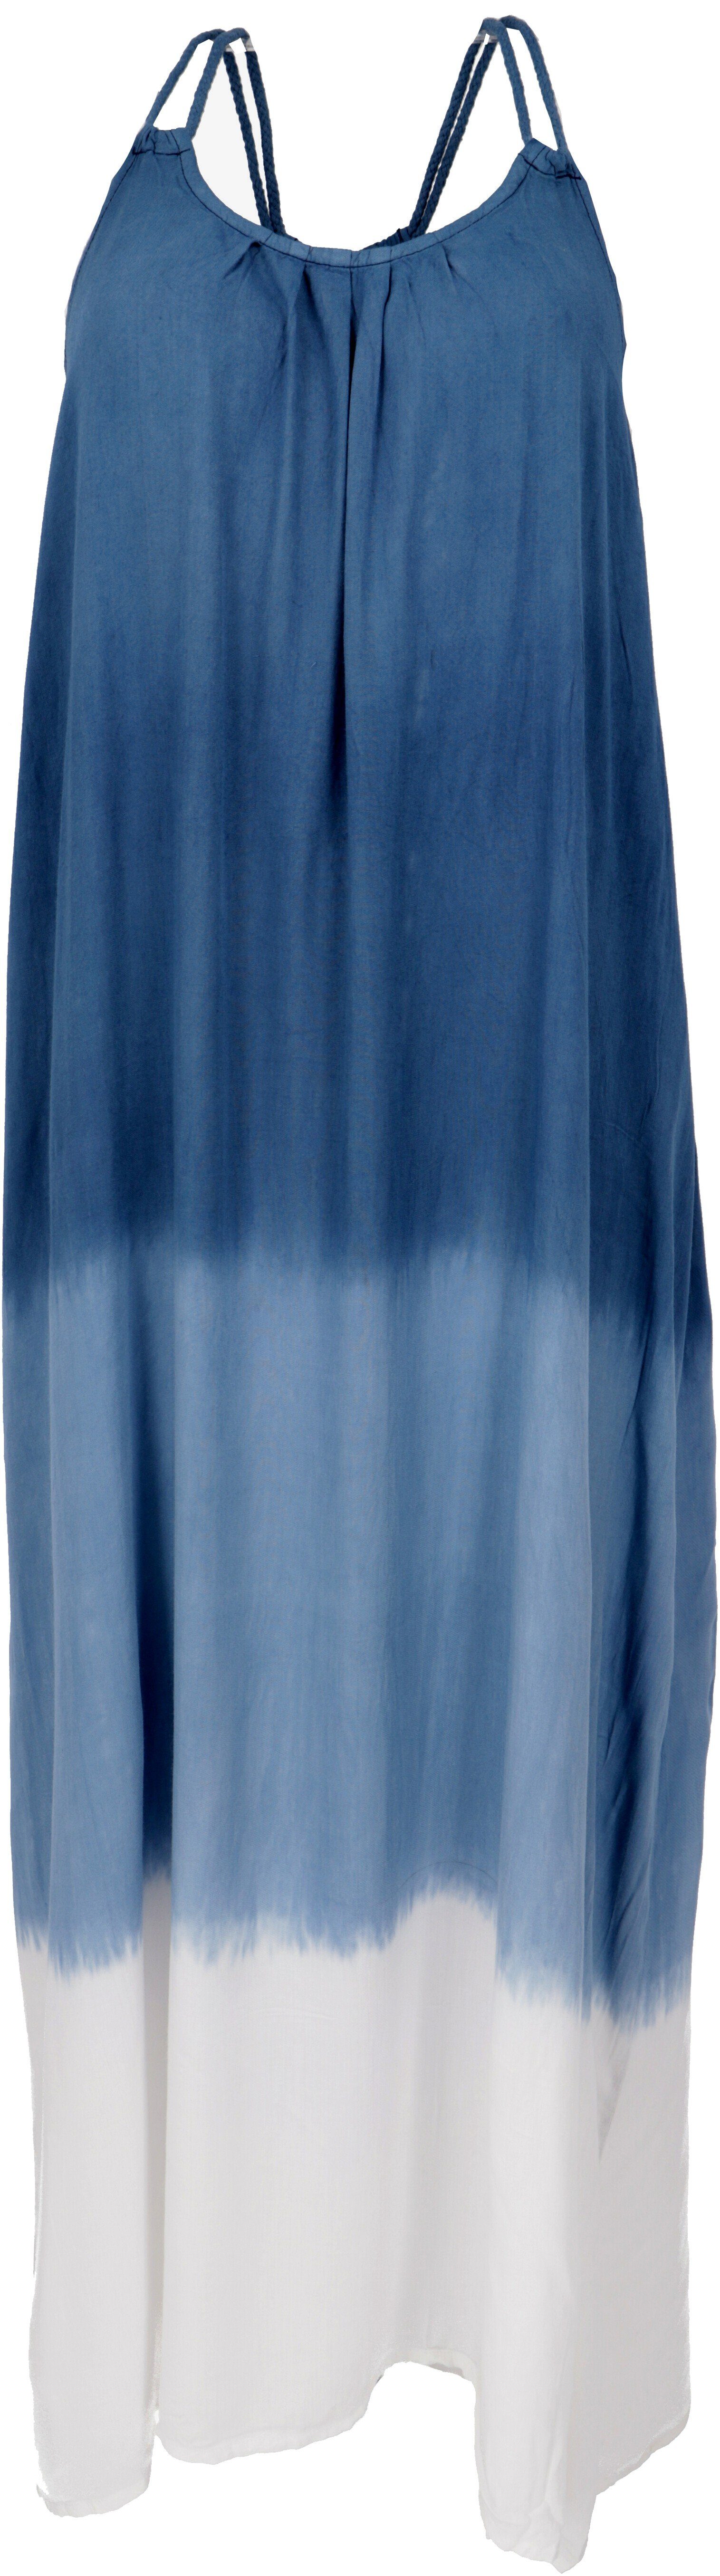 -.. Schmales Bekleidung blau/weiß alternative Batikkleid, Sommerkleid Strandkleid, Midikleid Guru-Shop